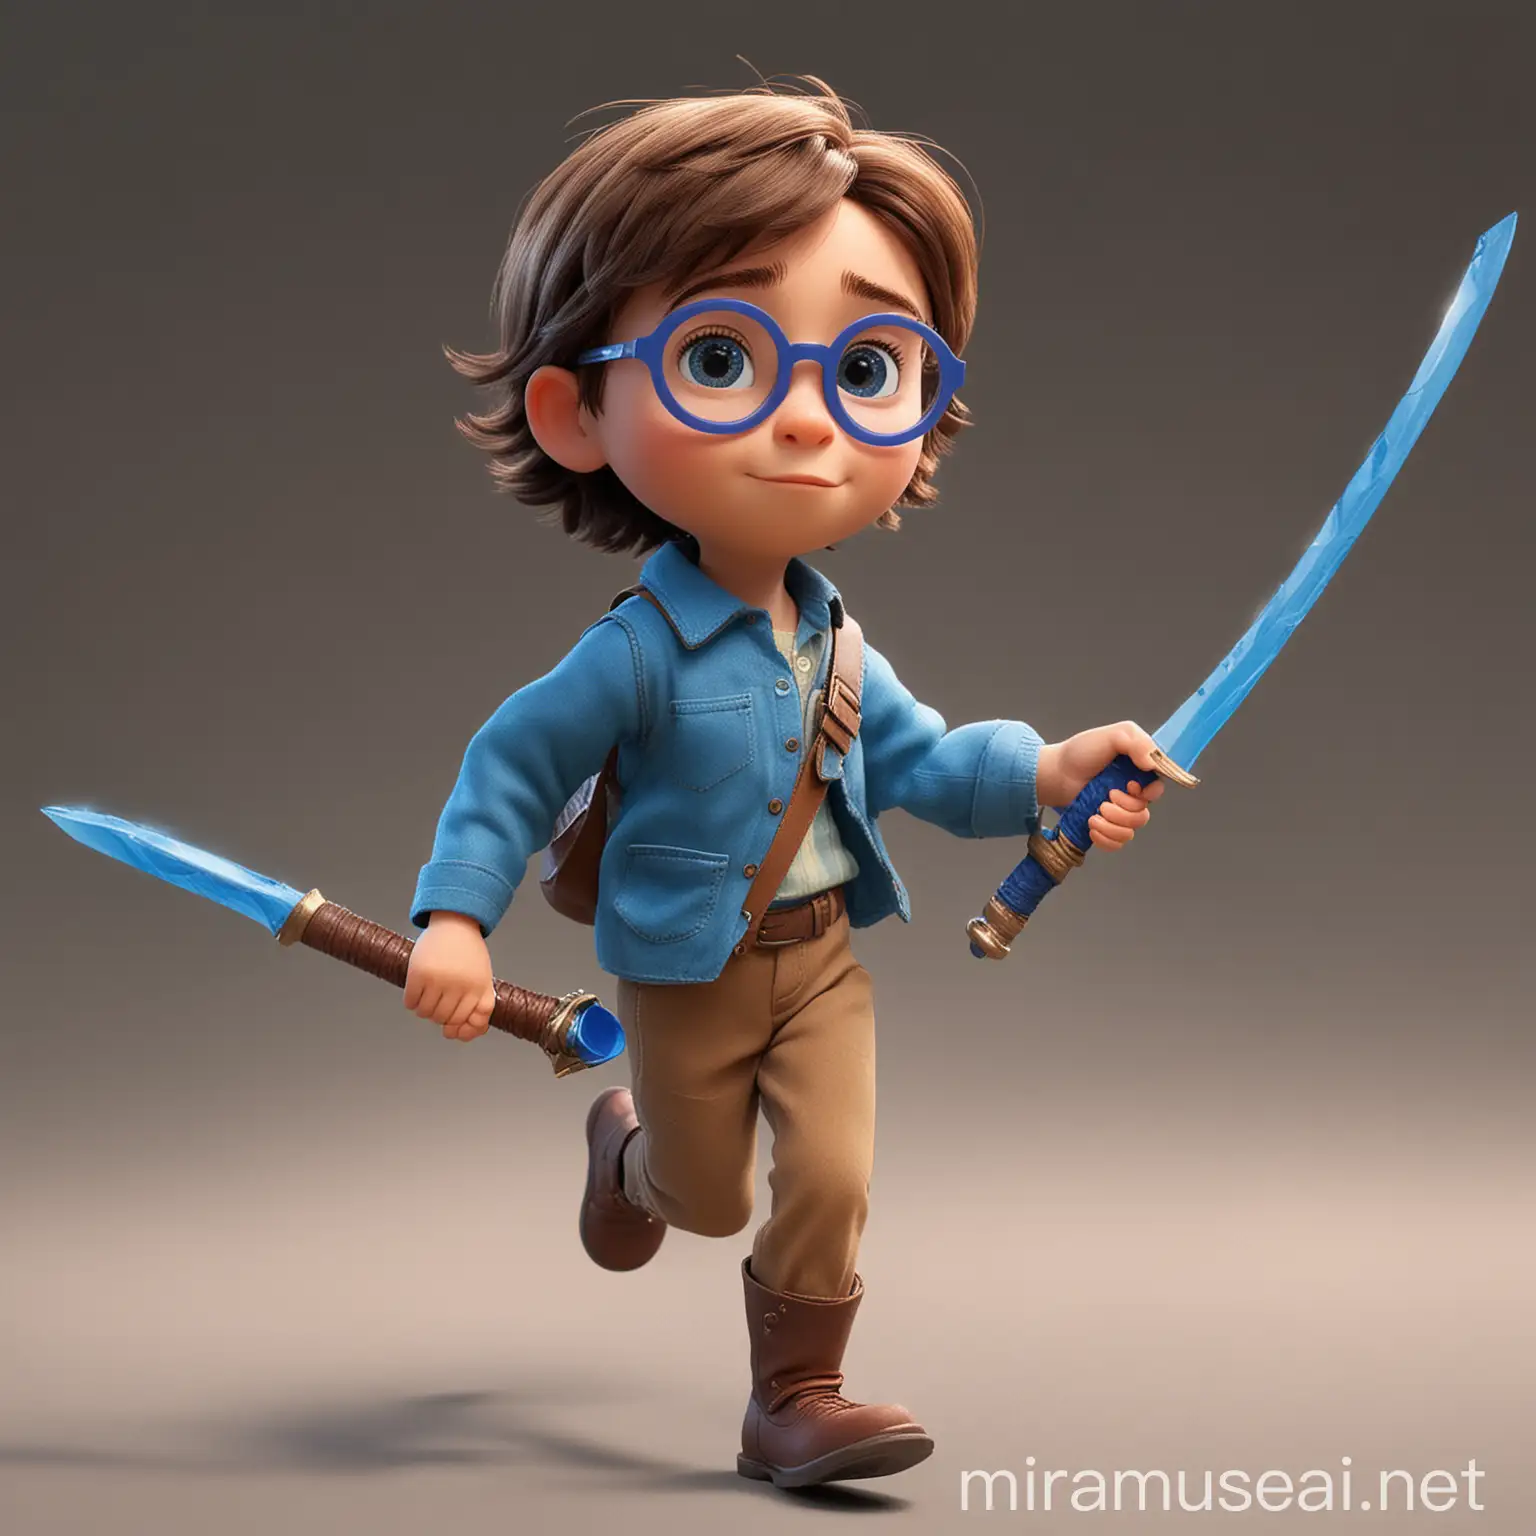 Crea un bambino di 6 anni, capelli castano e corti, con occhiali blu di forma rotonda, che corre con una spada di plastica in mano. Lo stile deve essere Pixar